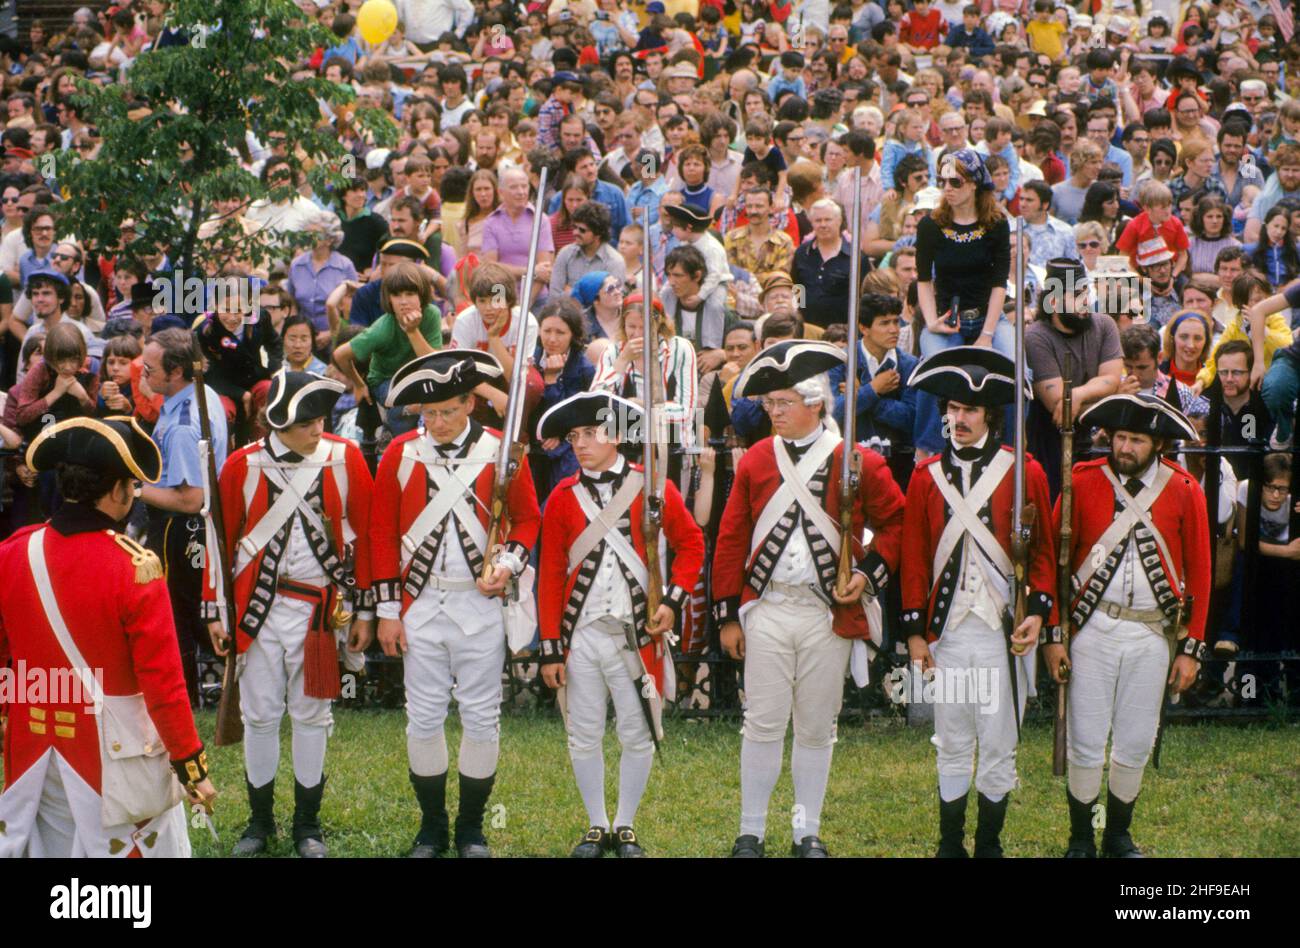 Actores voluntarios uniformados escenarian una recreación de la Batalla Revolución Americana de Bunker Hill en el lugar original en Charlestown, MA. Foto de stock